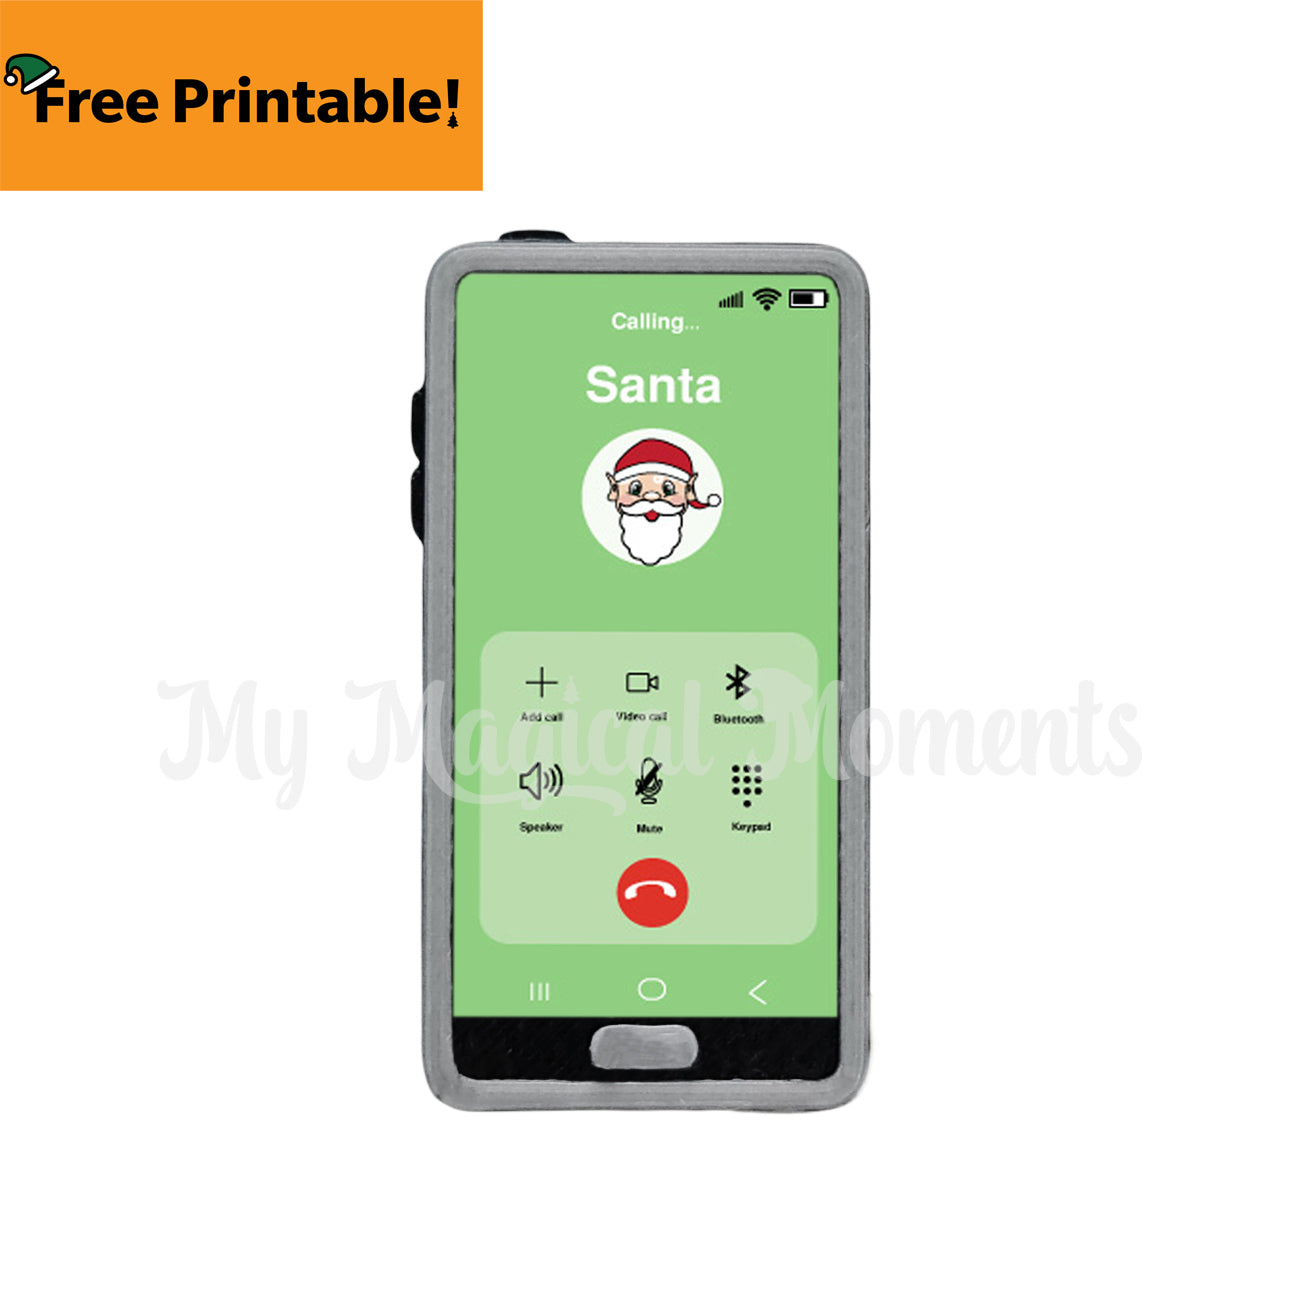 Free elf phone screen printable - calling Santa